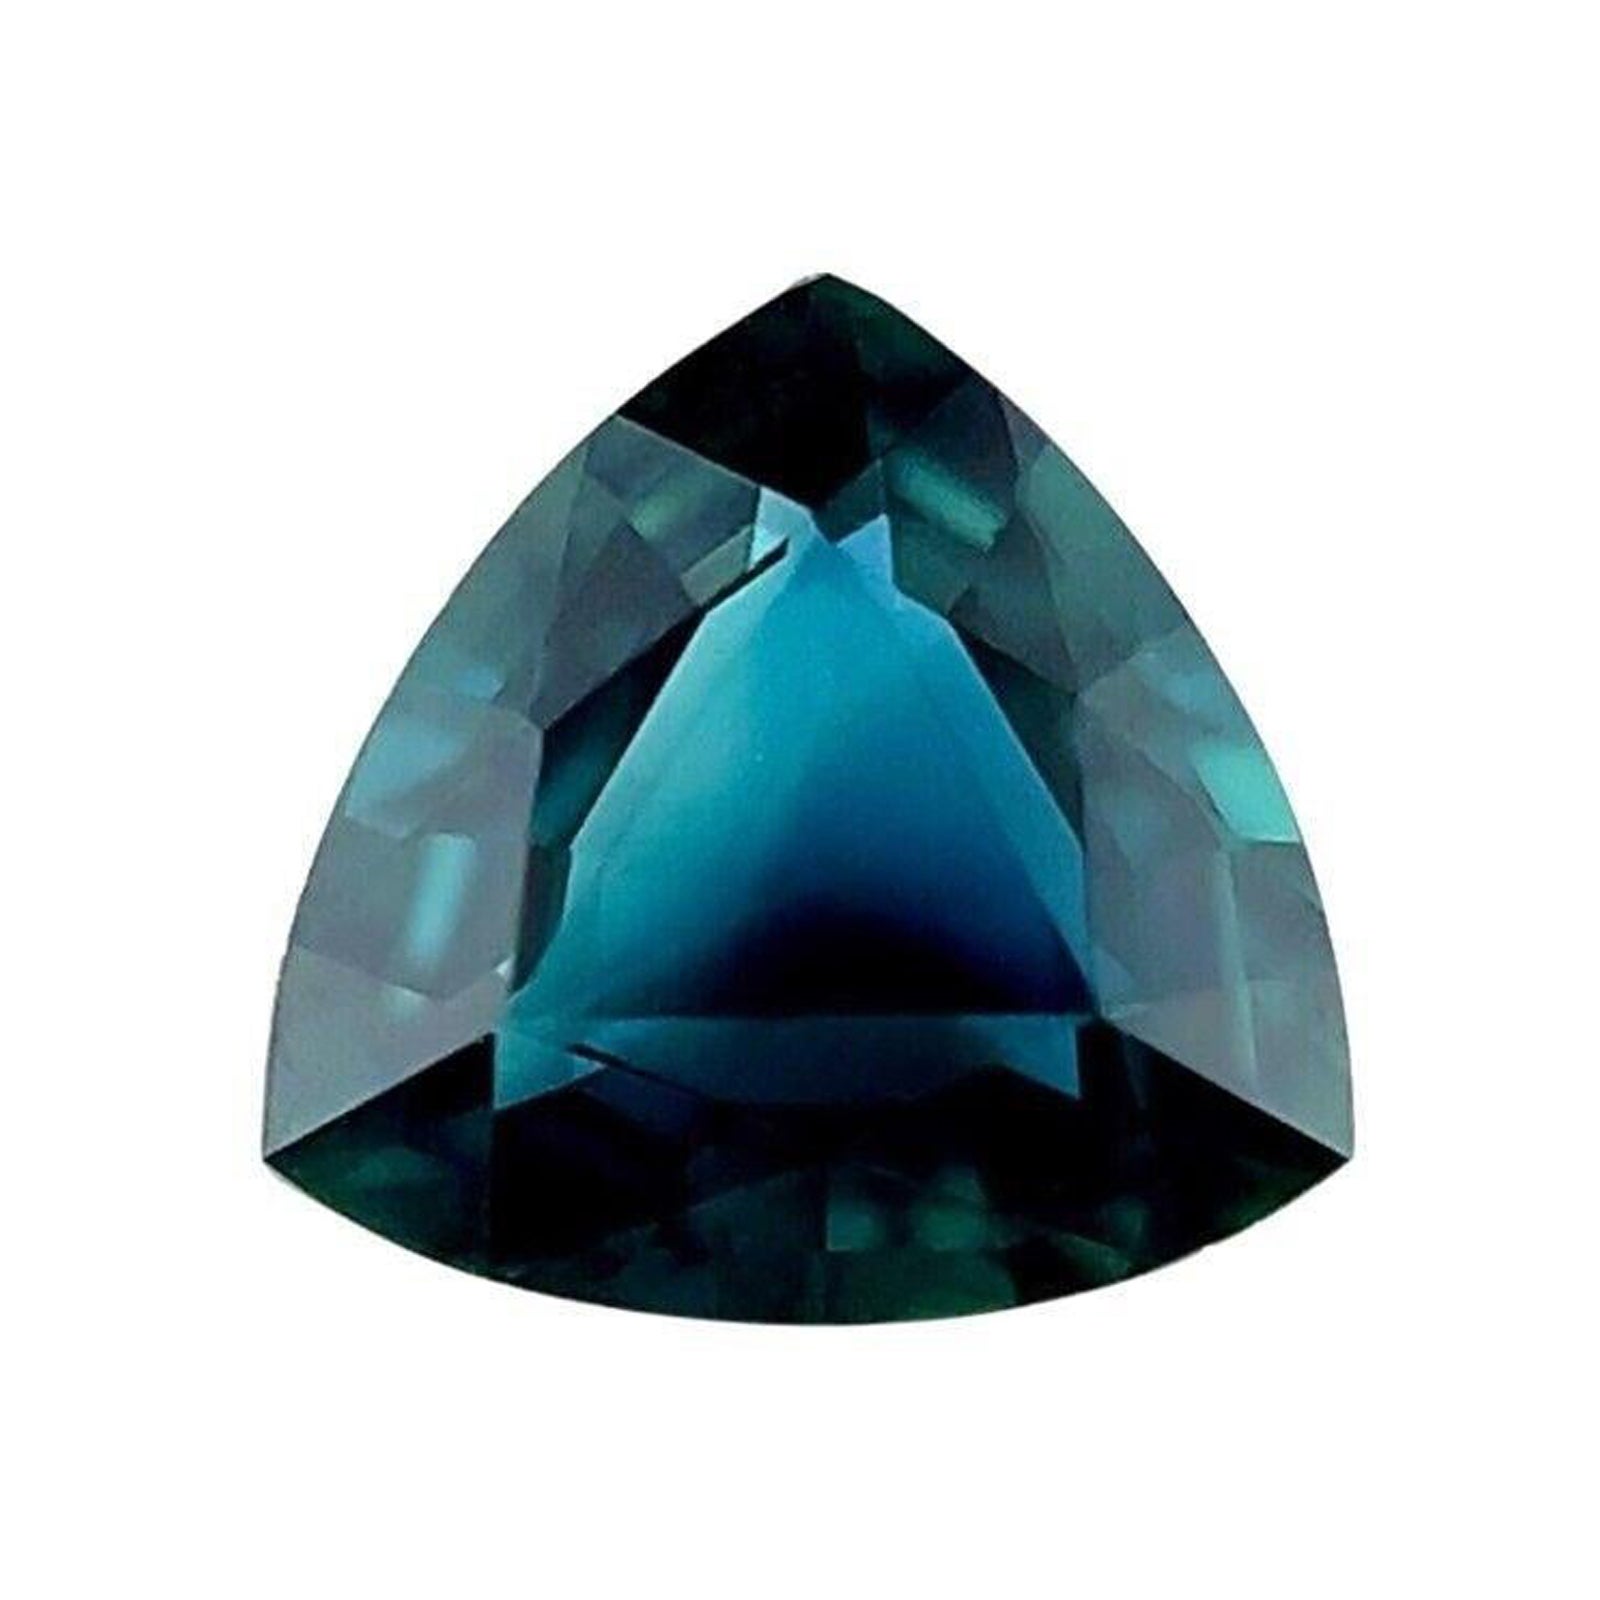 Saphir bleu de 1,15 carat non traité, pierre précieuse naturelle de taille triangulaire, certifiée GIA